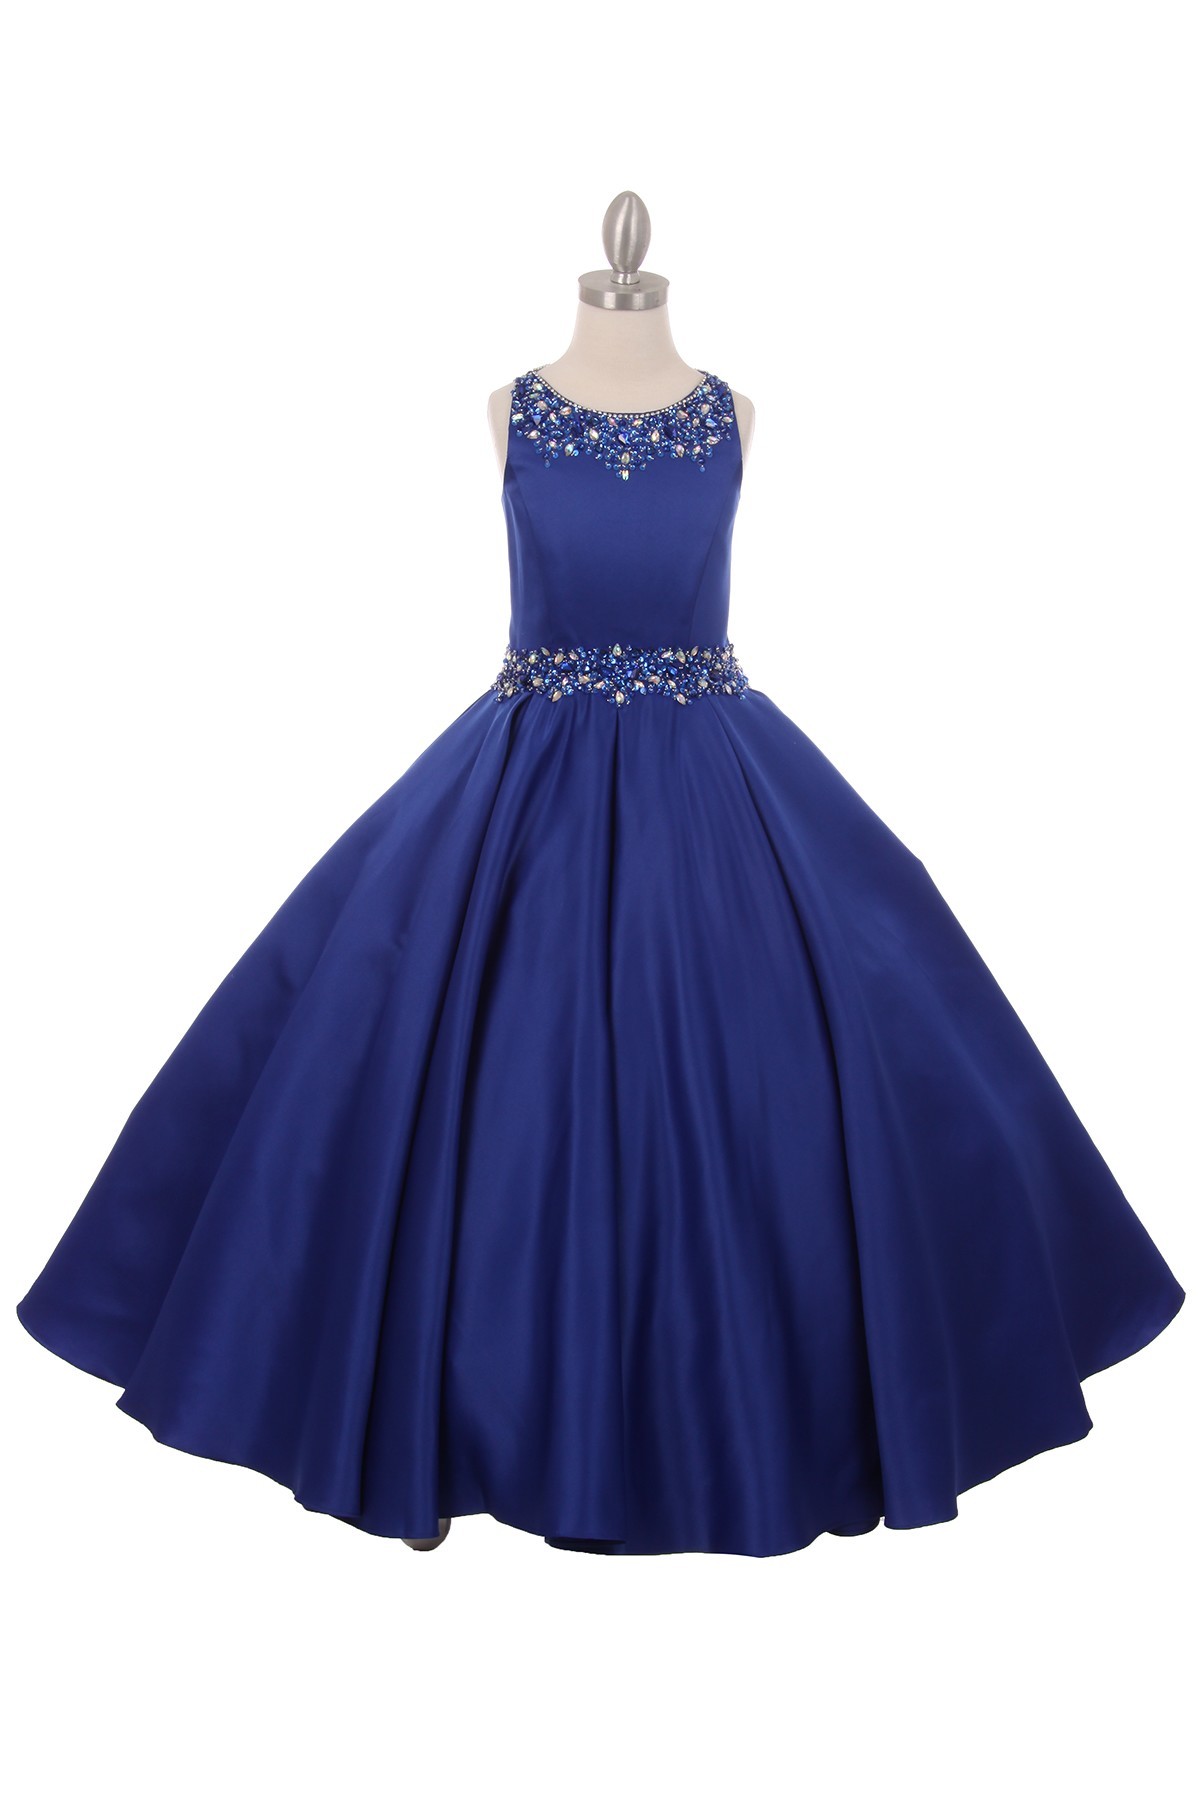 royal blue dresses for girls